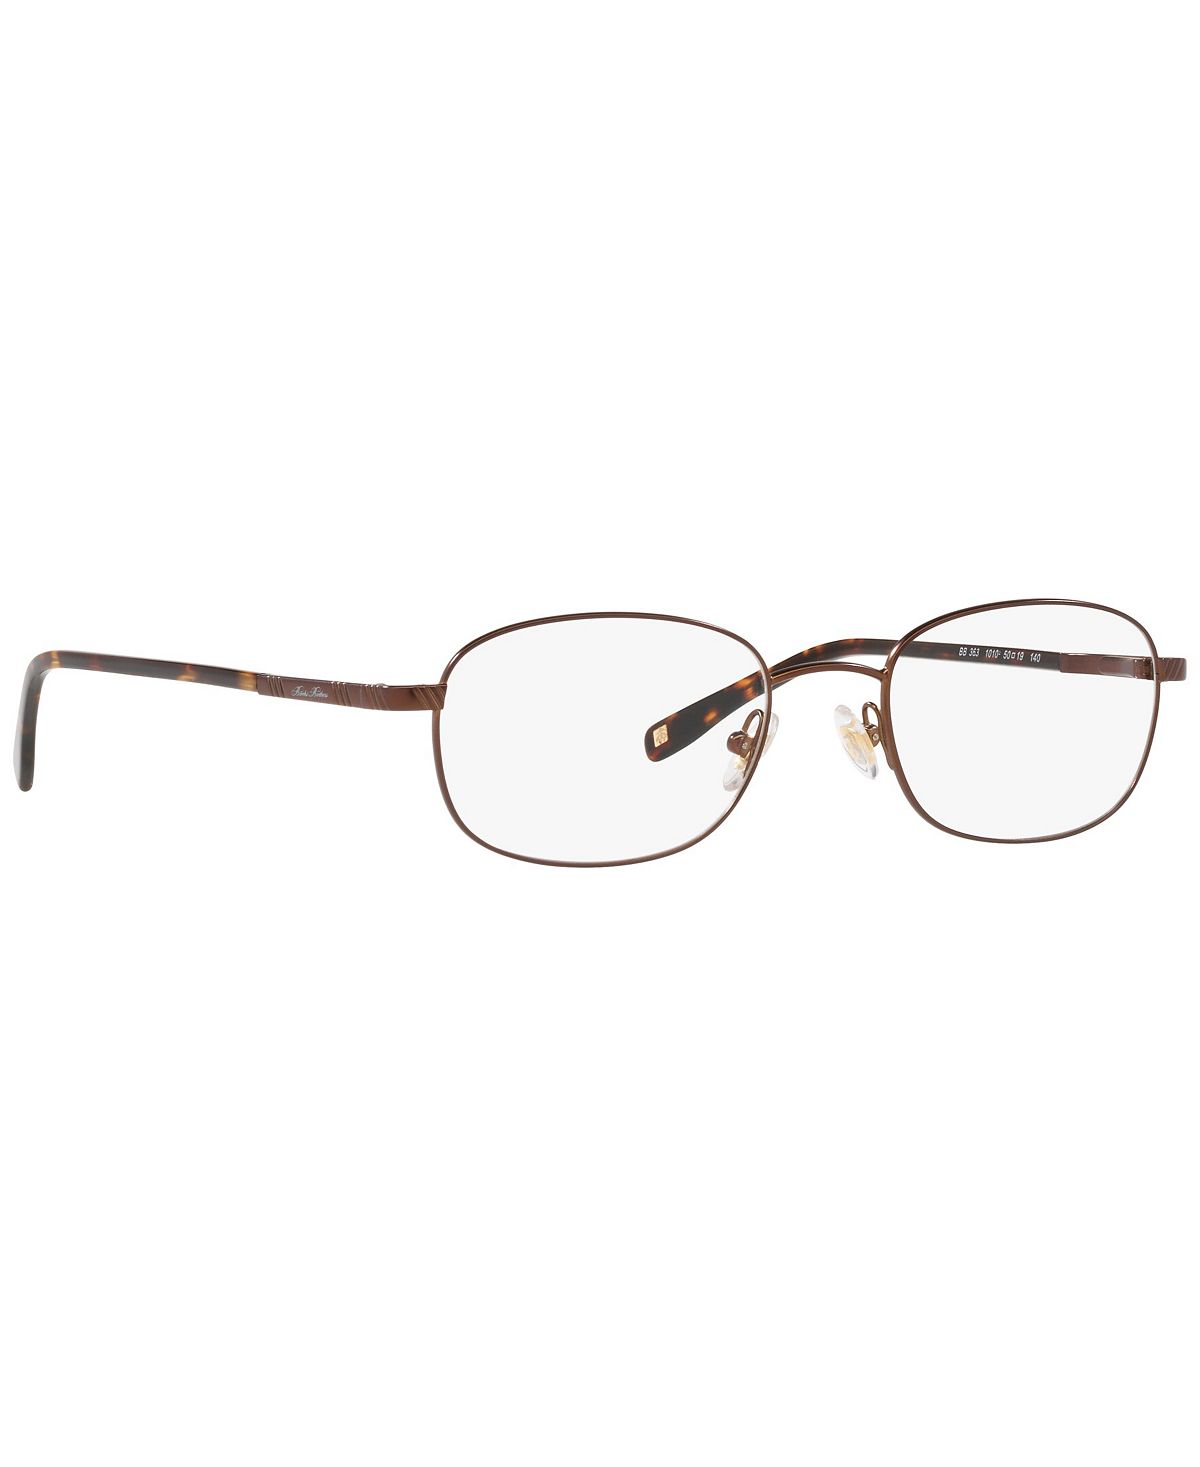 Мужские очки, BB 363 50 Brooks Brothers